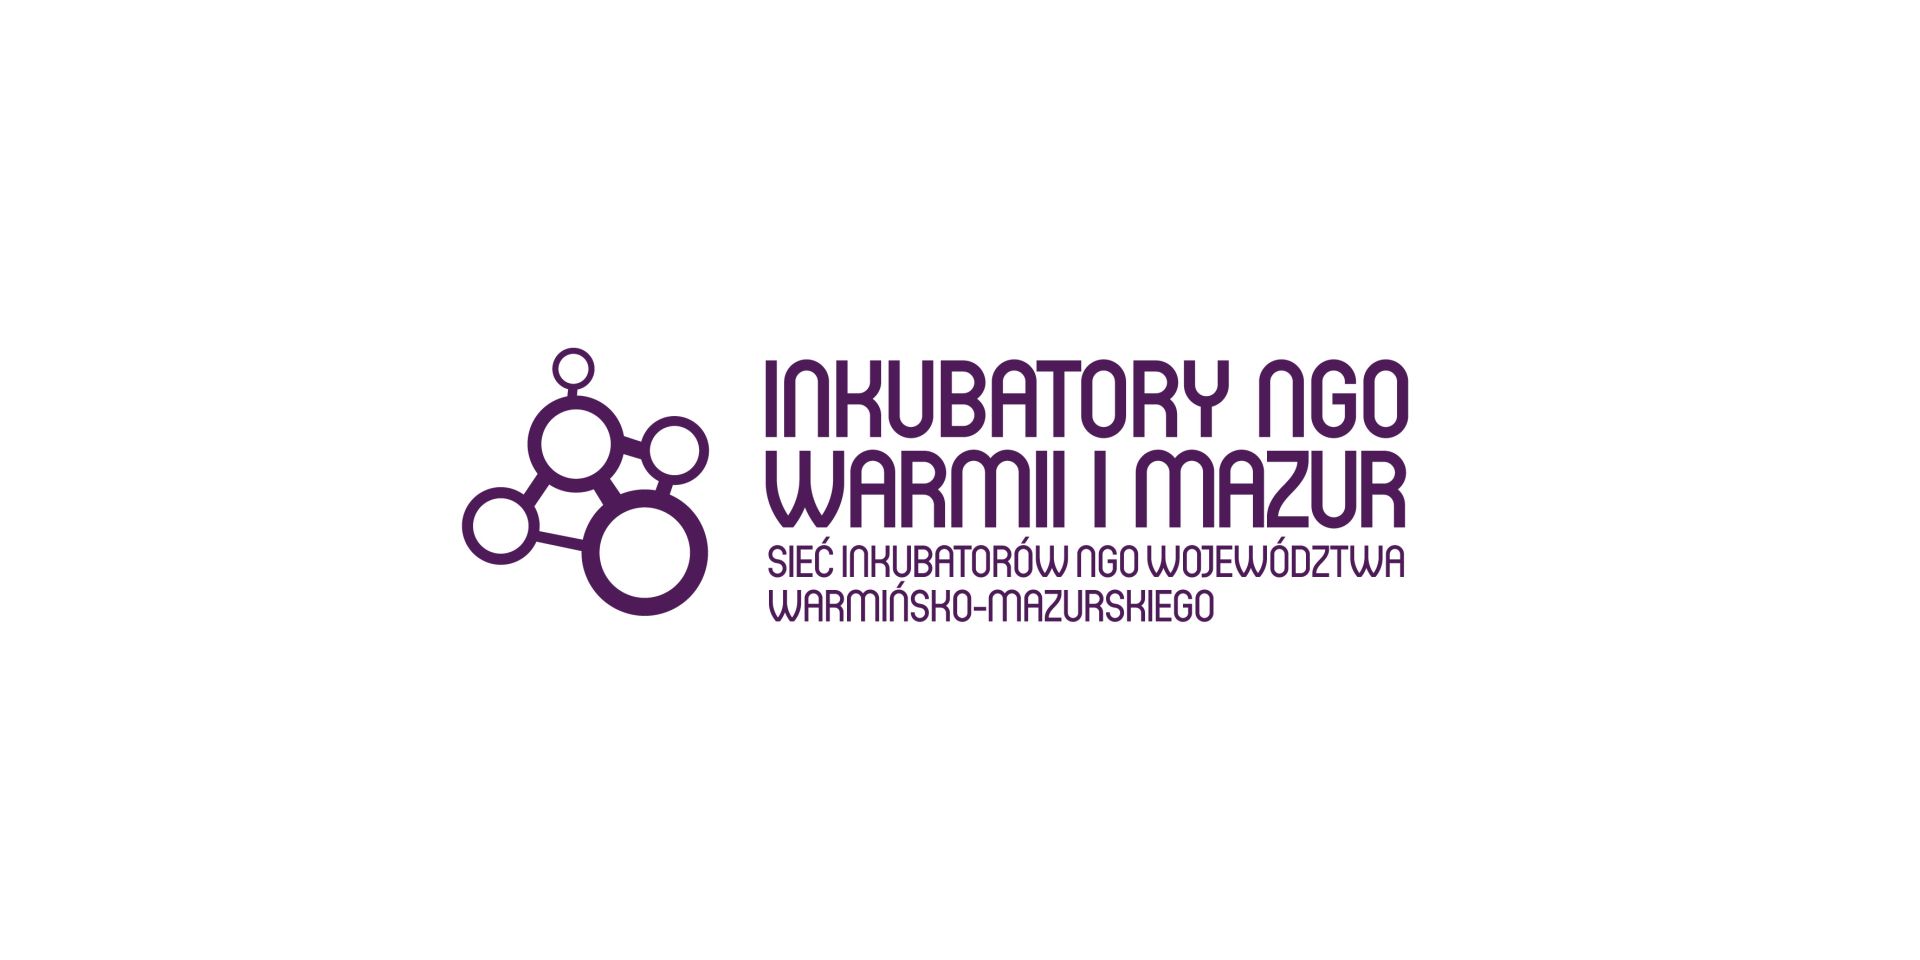 Inkubatory NGO Warmii i Mazur